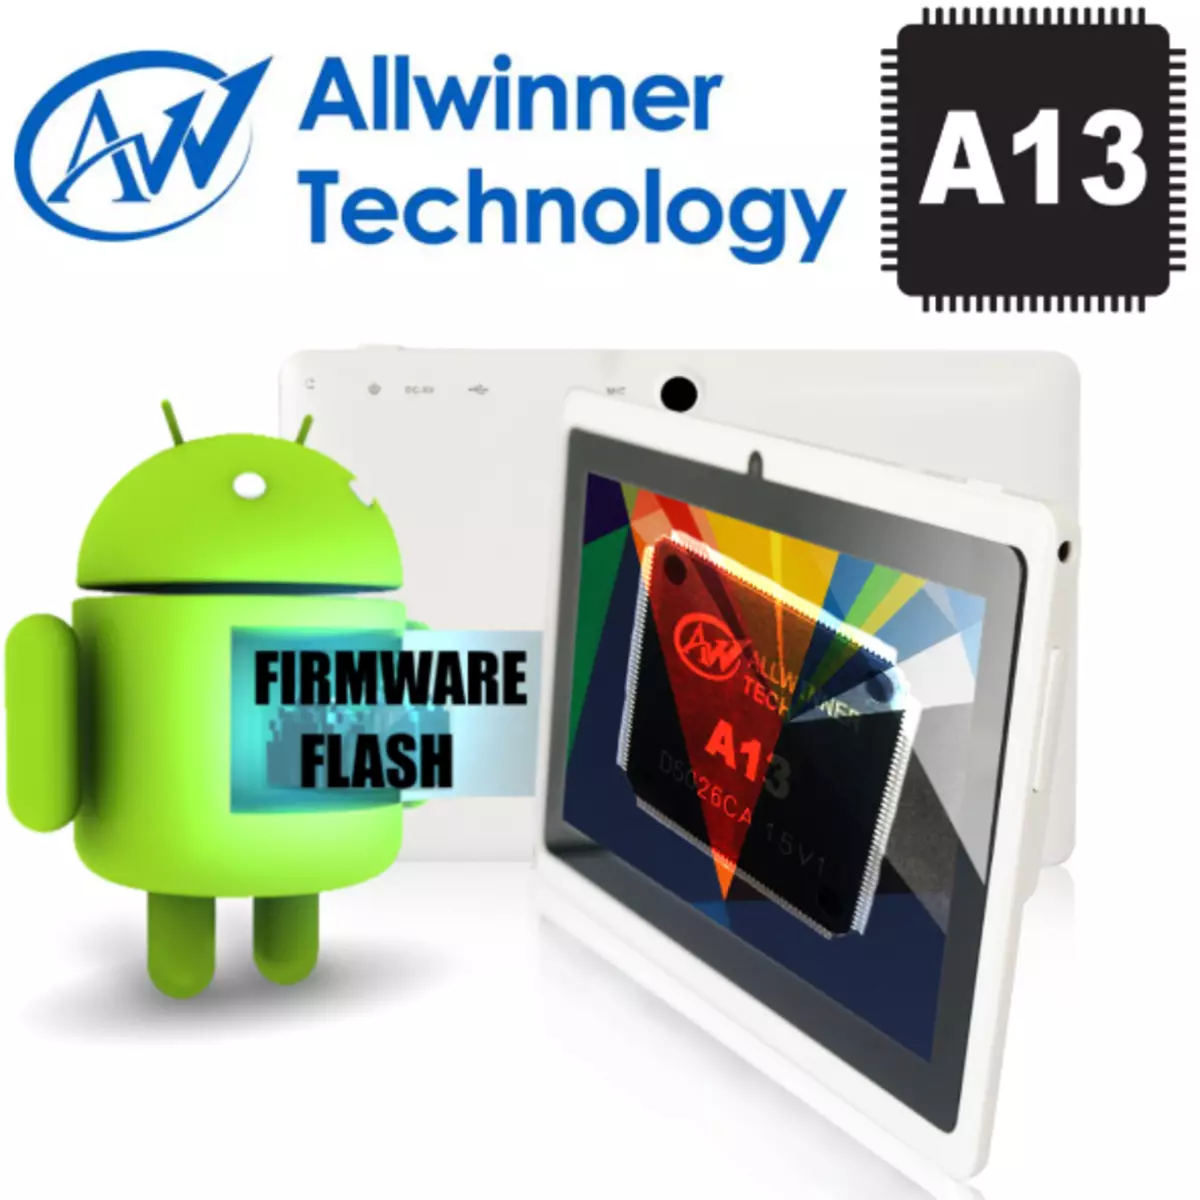 Allwinner A13 Firmware.